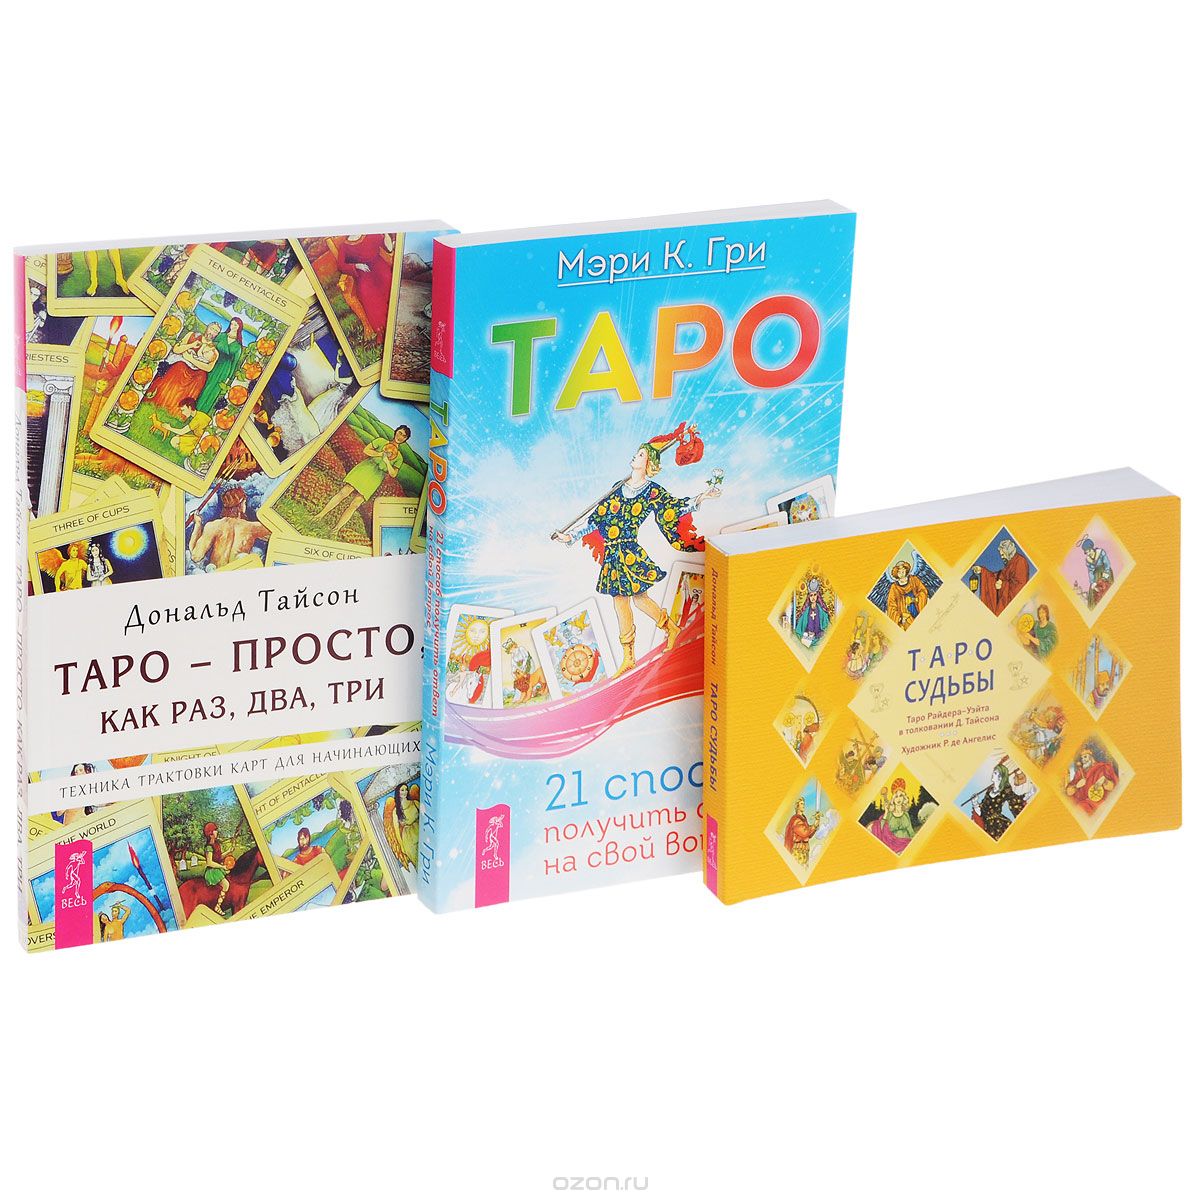 Скачать книгу "Таро - просто, как раз, два, три. Таро. Таро судьбы (комплект из 3 книг + набор из 78 карт), Дональд Тайсон, Мэри К. Гри"